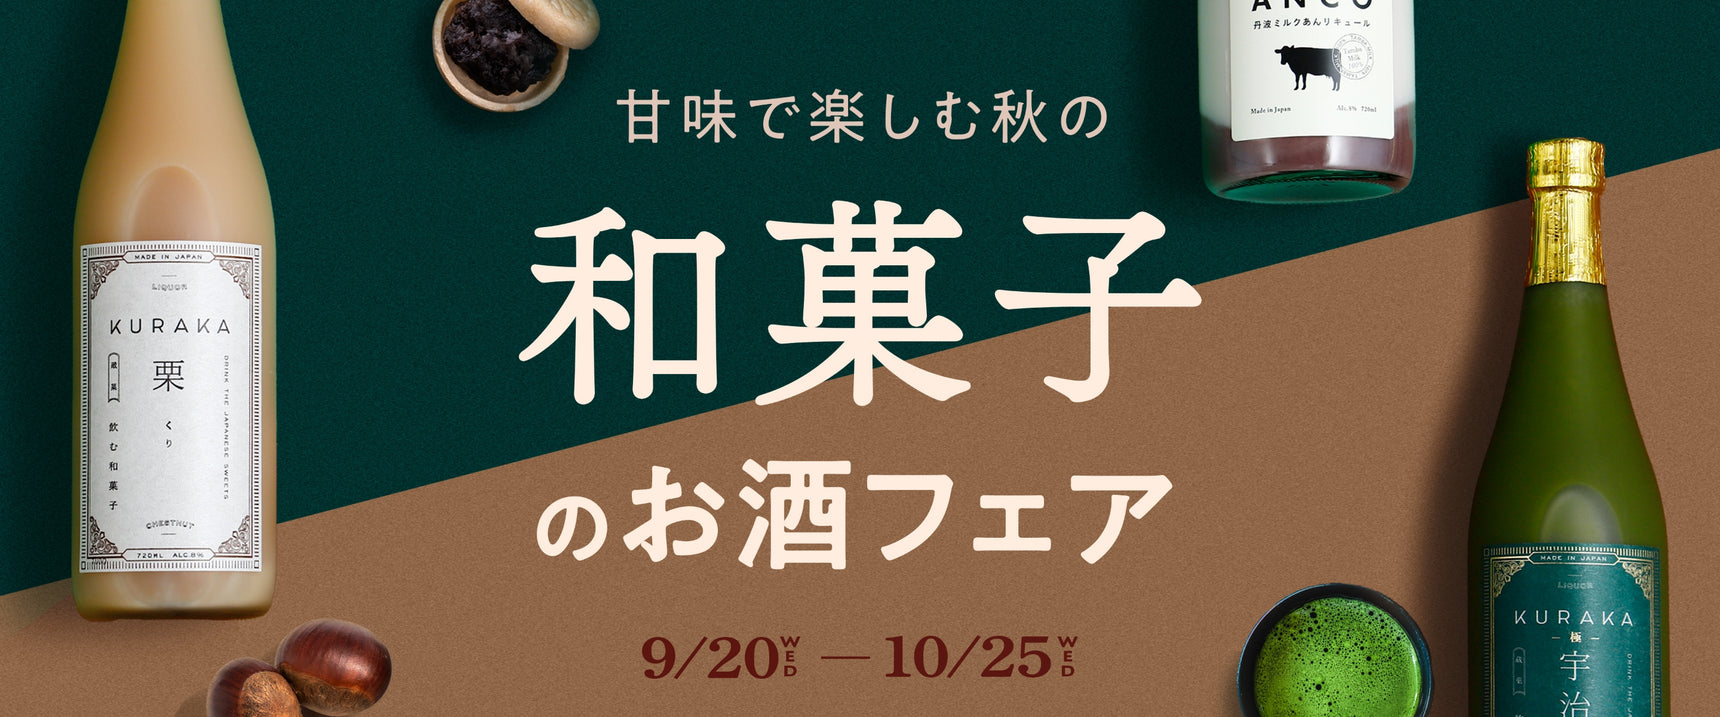 甘味で楽しむ秋の和菓子のお酒フェア 9/20 WED - 10/25 WED